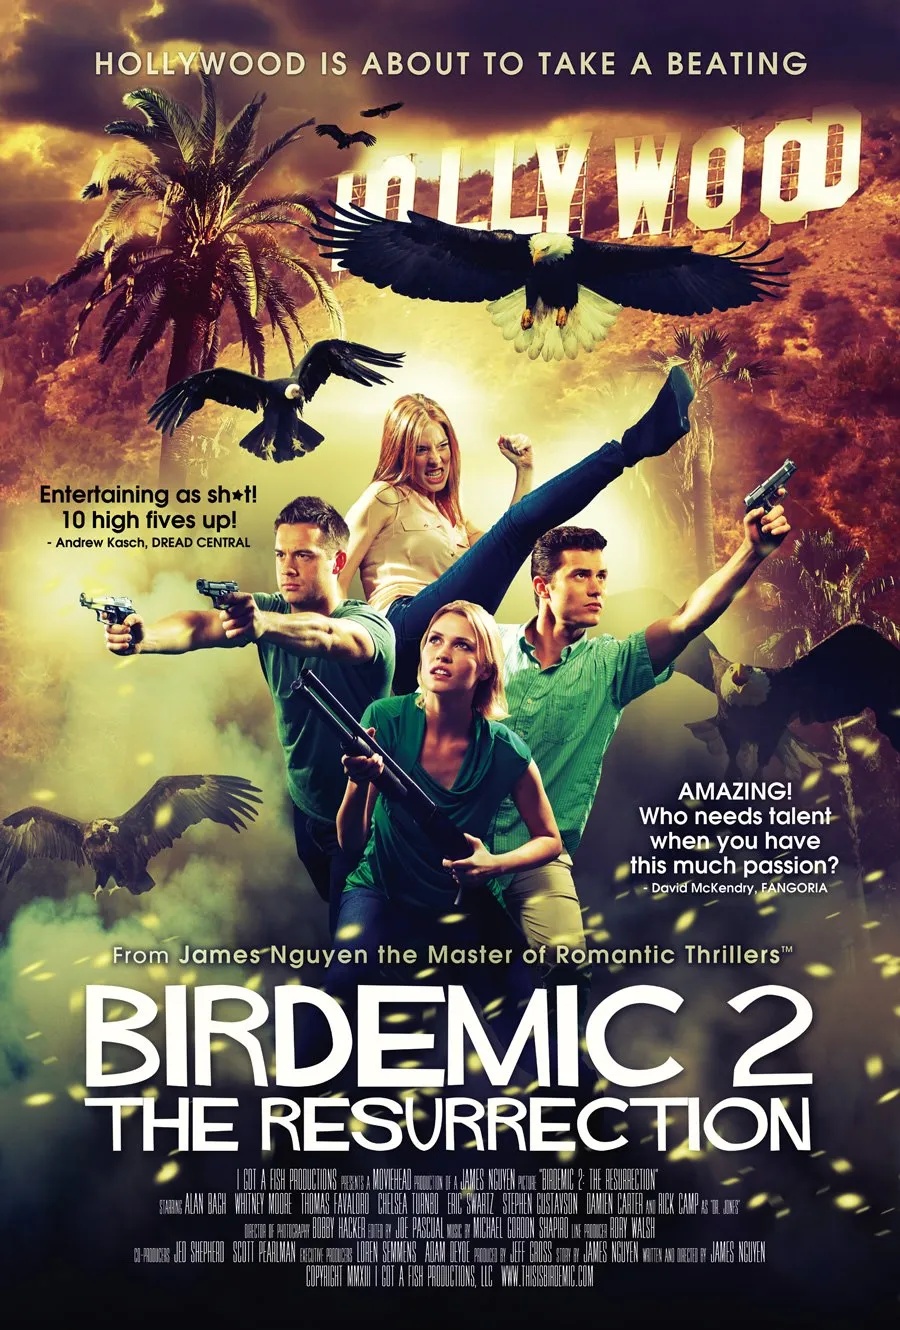 plakat. 4 młode osoby (2 kobiety, 2 mężczyzn) z bronią wycelowaną w różne strony. Wokół latają ptaki.